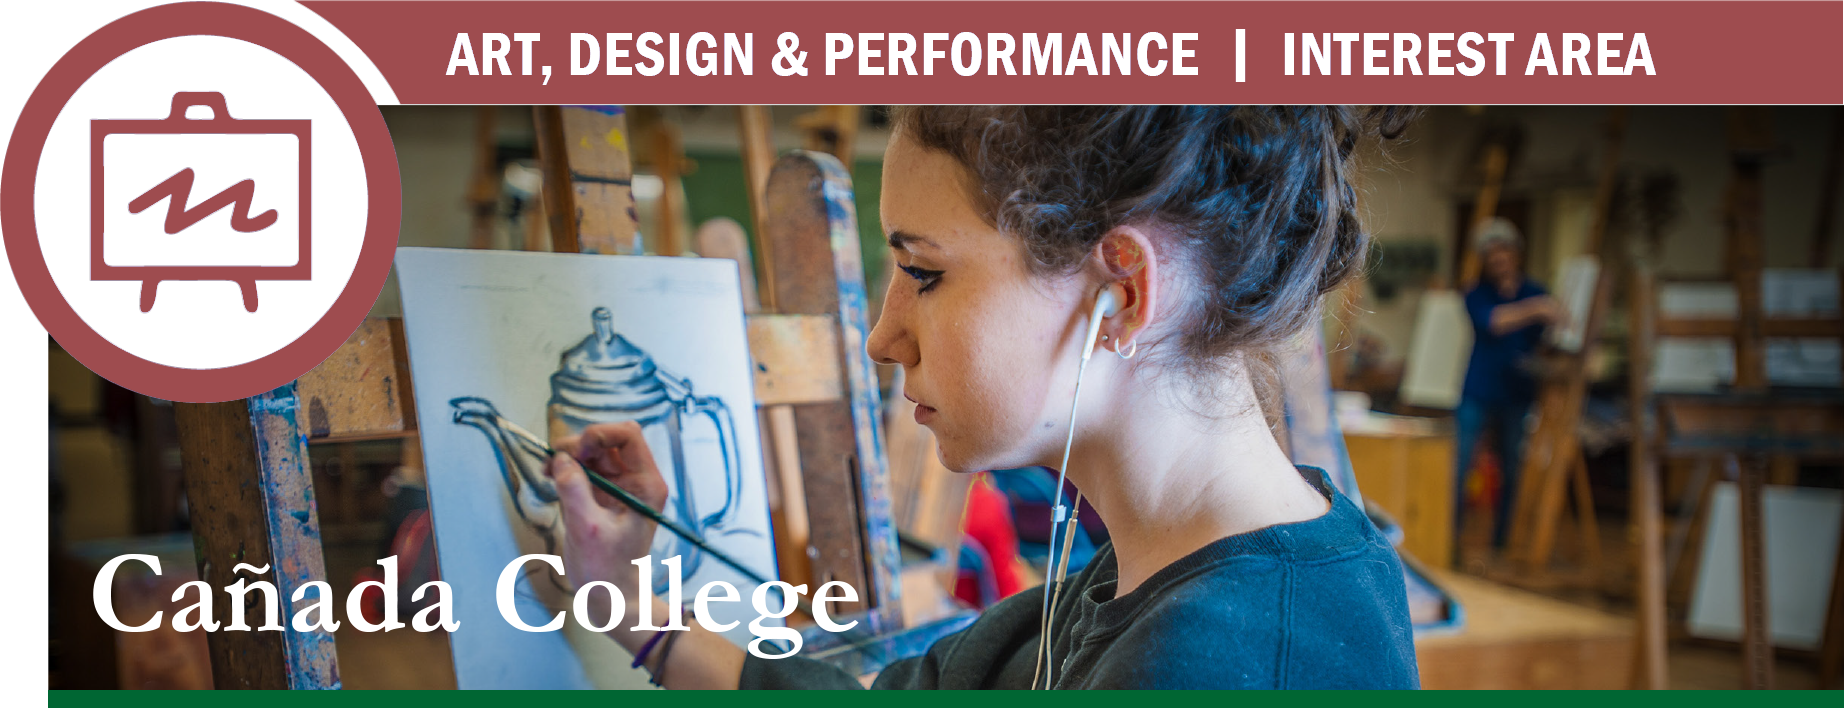 Art, Design & Performance | Interest Area | Cañada College